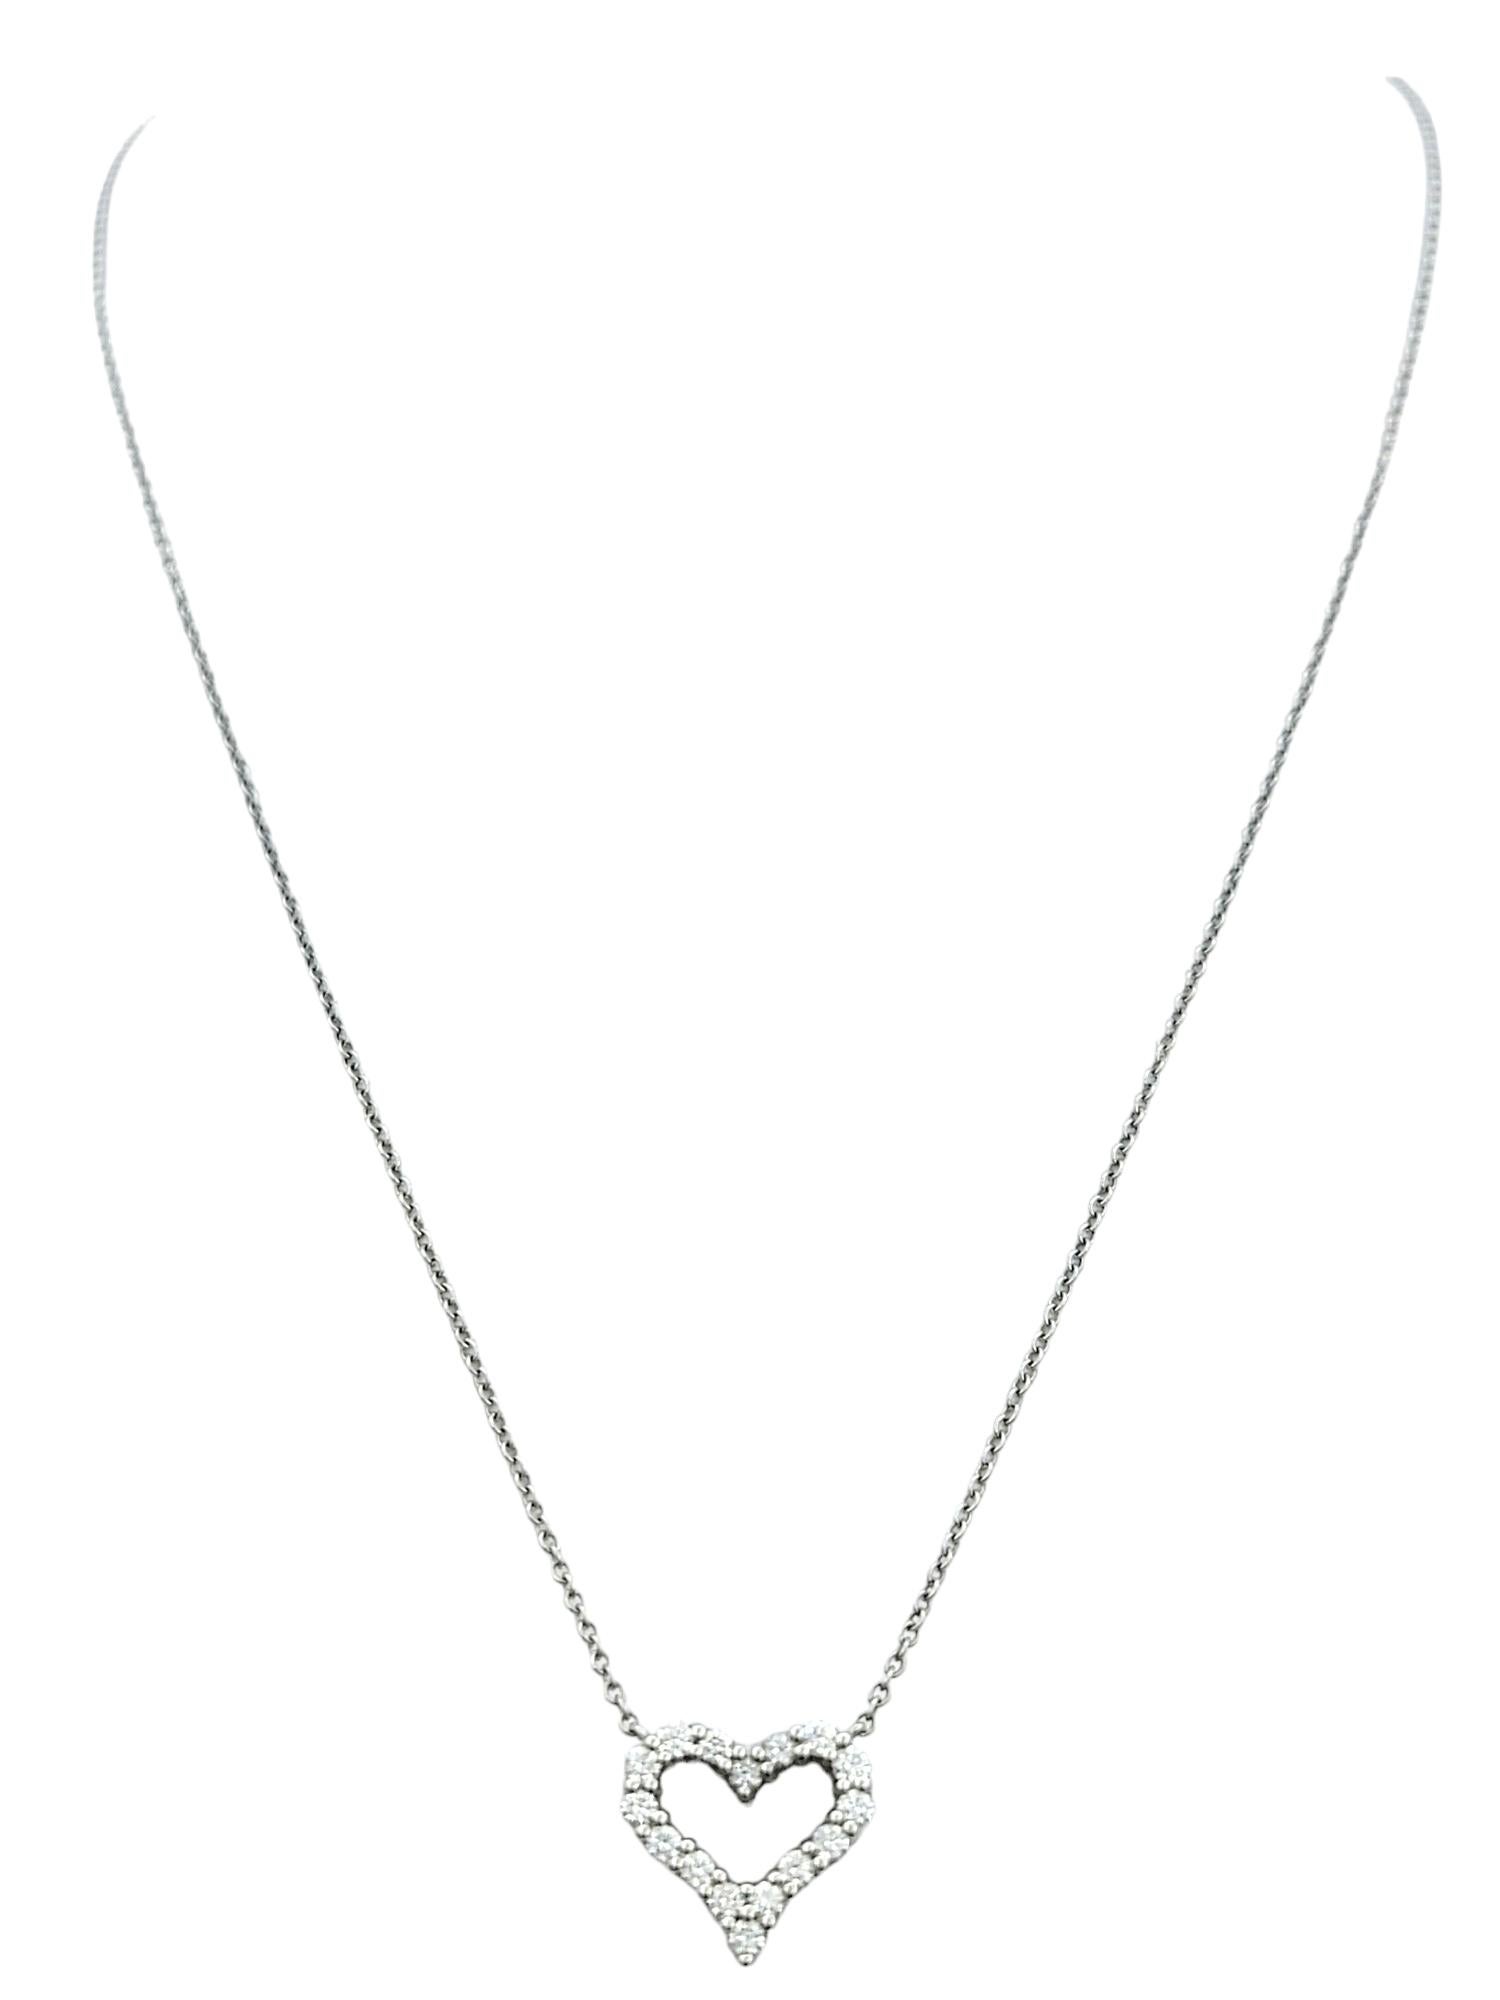 Contemporary Tiffany & Co. Round Diamond Open Heart Pendant Necklace in Platinum, F-G / VS1-2 For Sale